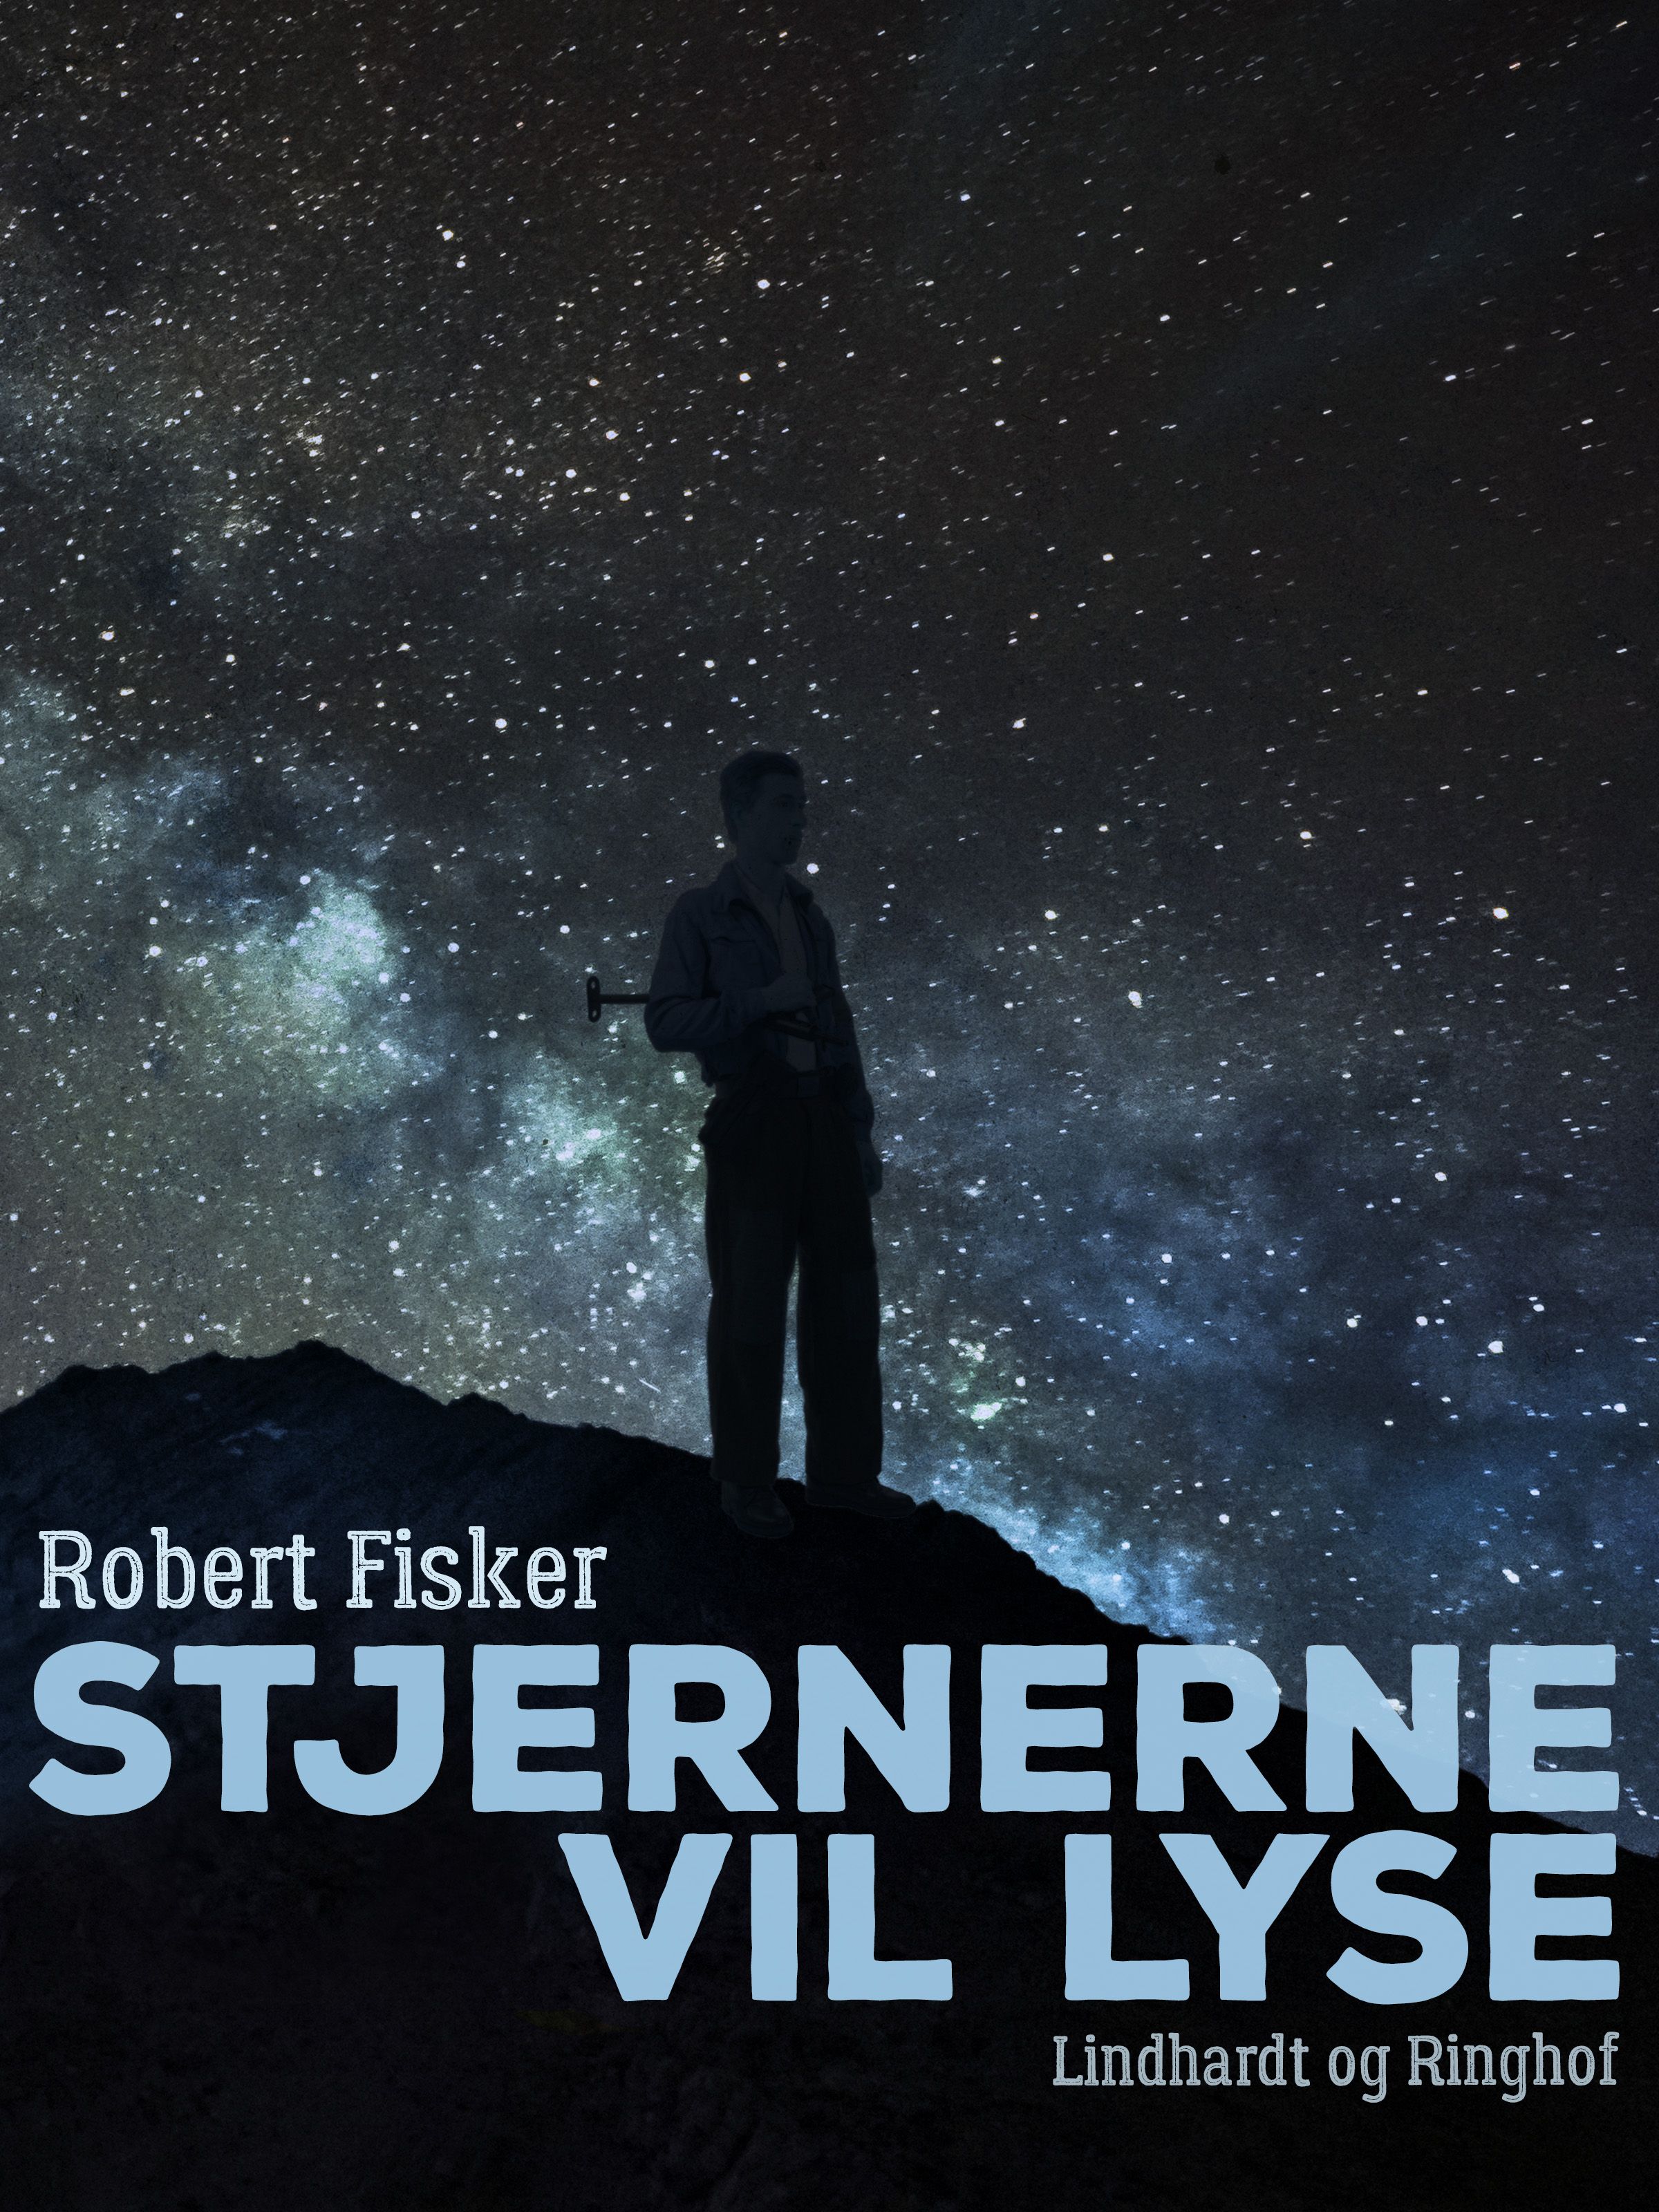 Stjernerne vil lyse, eBook by Robert Fisker